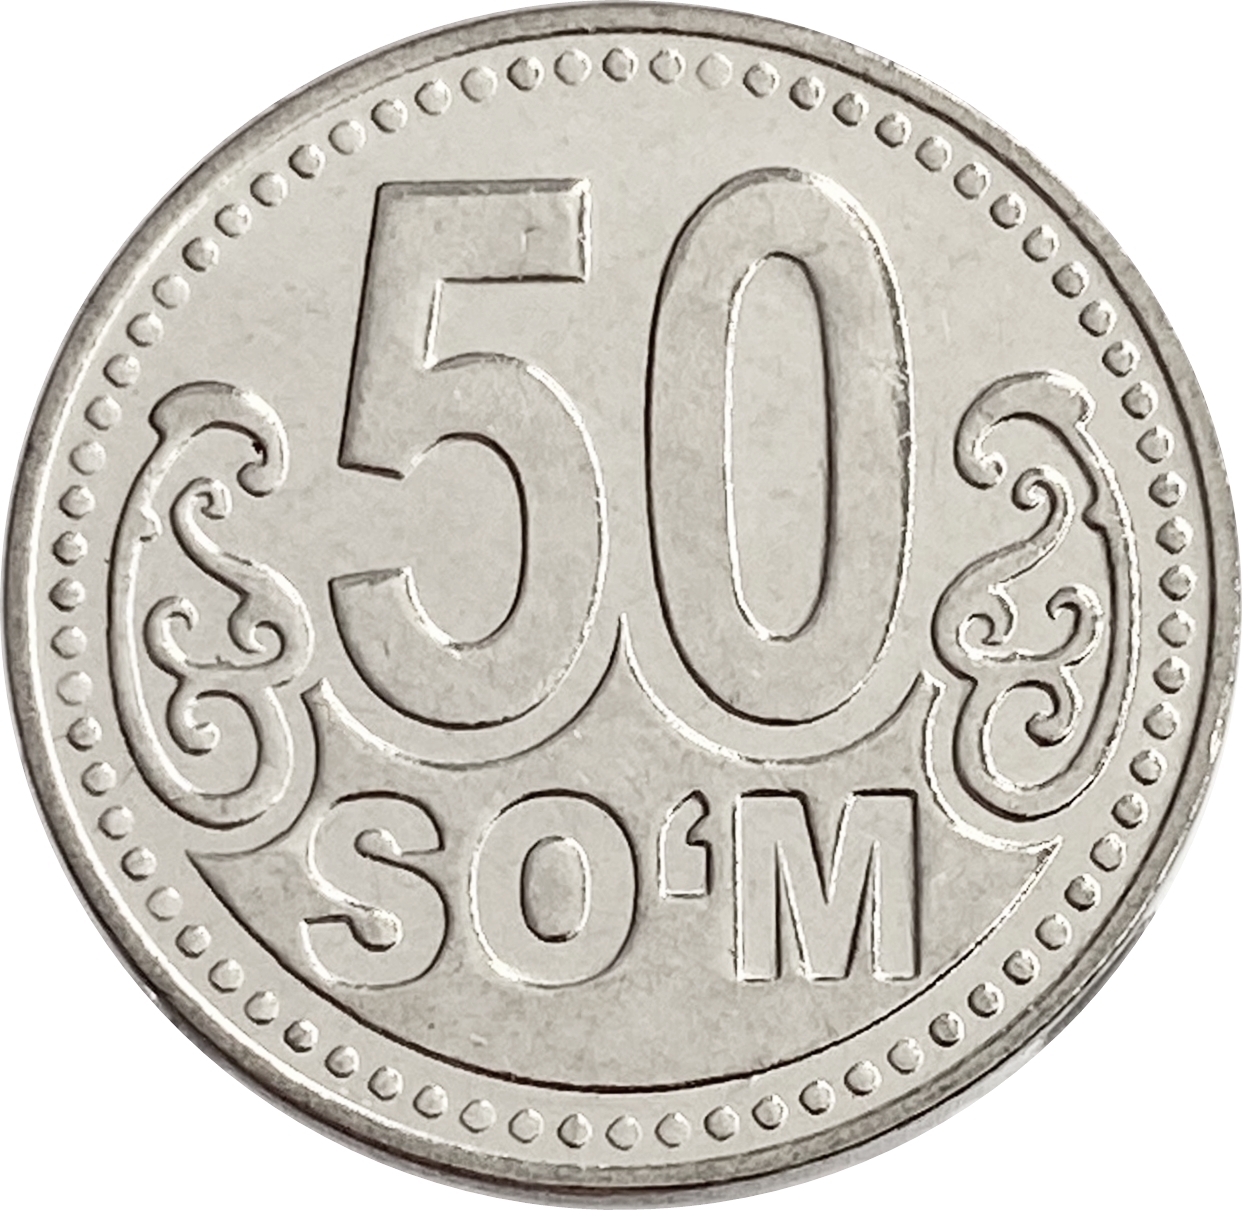 Монета 50 сум. Монета 5 сум. Монета 50 тийин 1994 года Узбекистан. Монеты Узбекистана 2022. 10 тысяч рублей в узбекских сумах